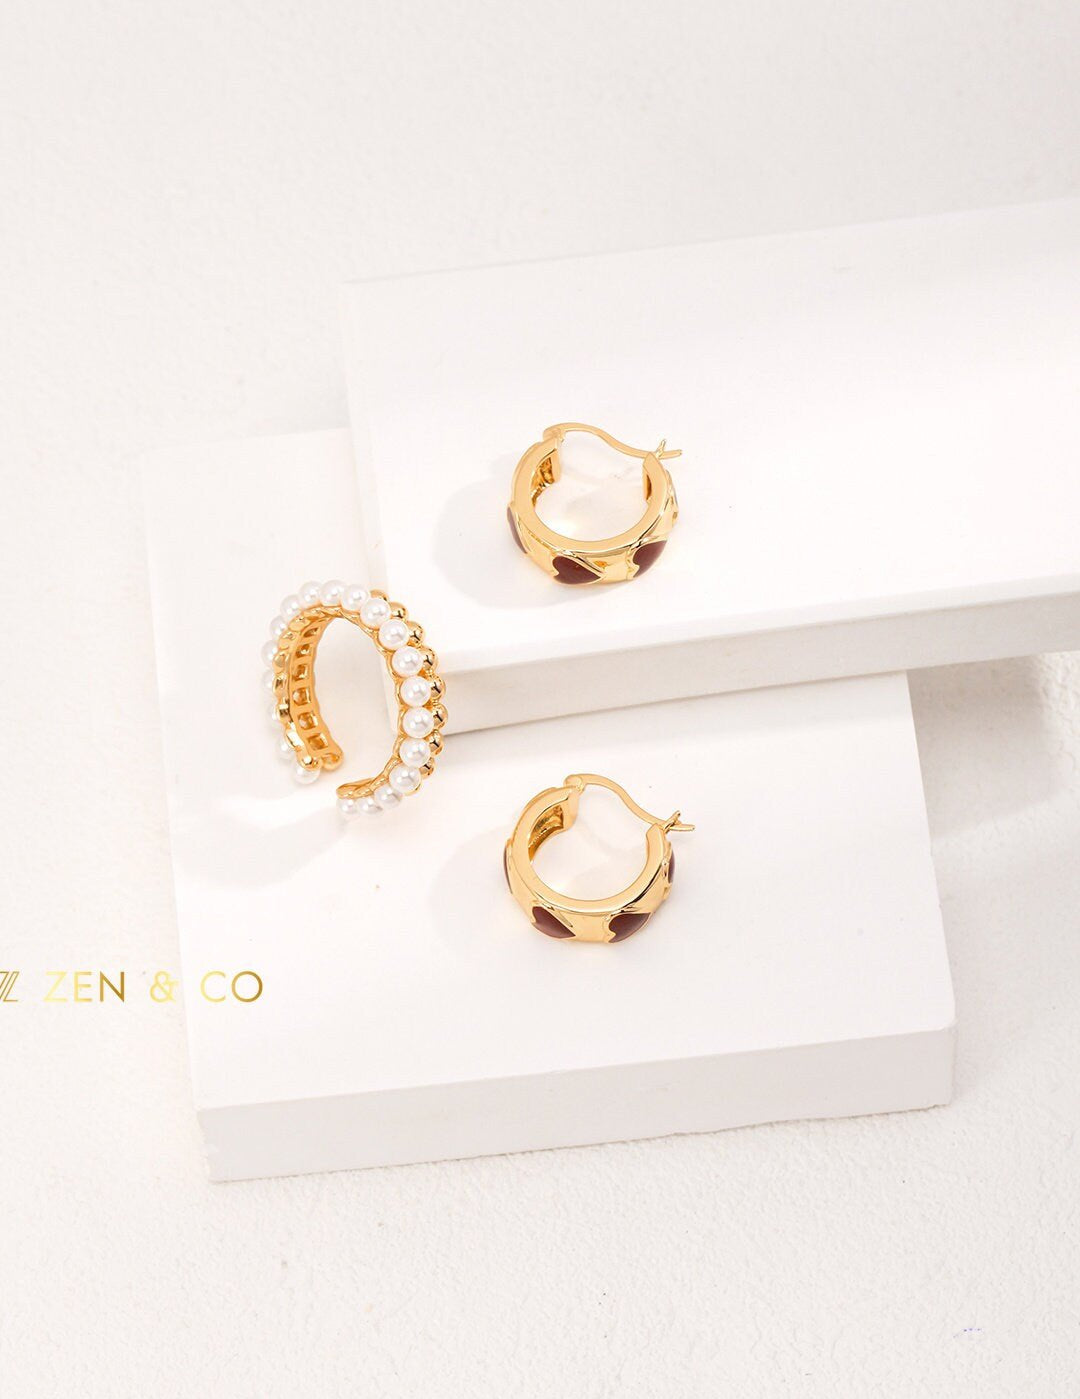 LUCKY Gold Red enamel hoop earrings Red enamel fan earrings - ZEN&CO Studio